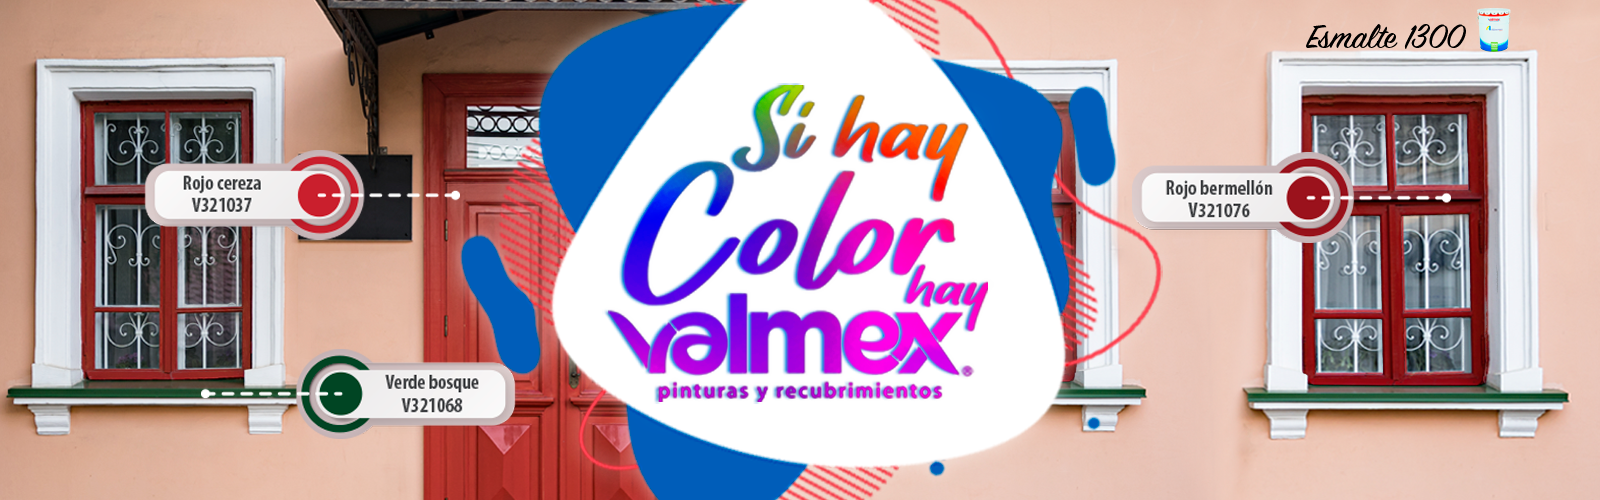 Si Hay Color, hay Valmex